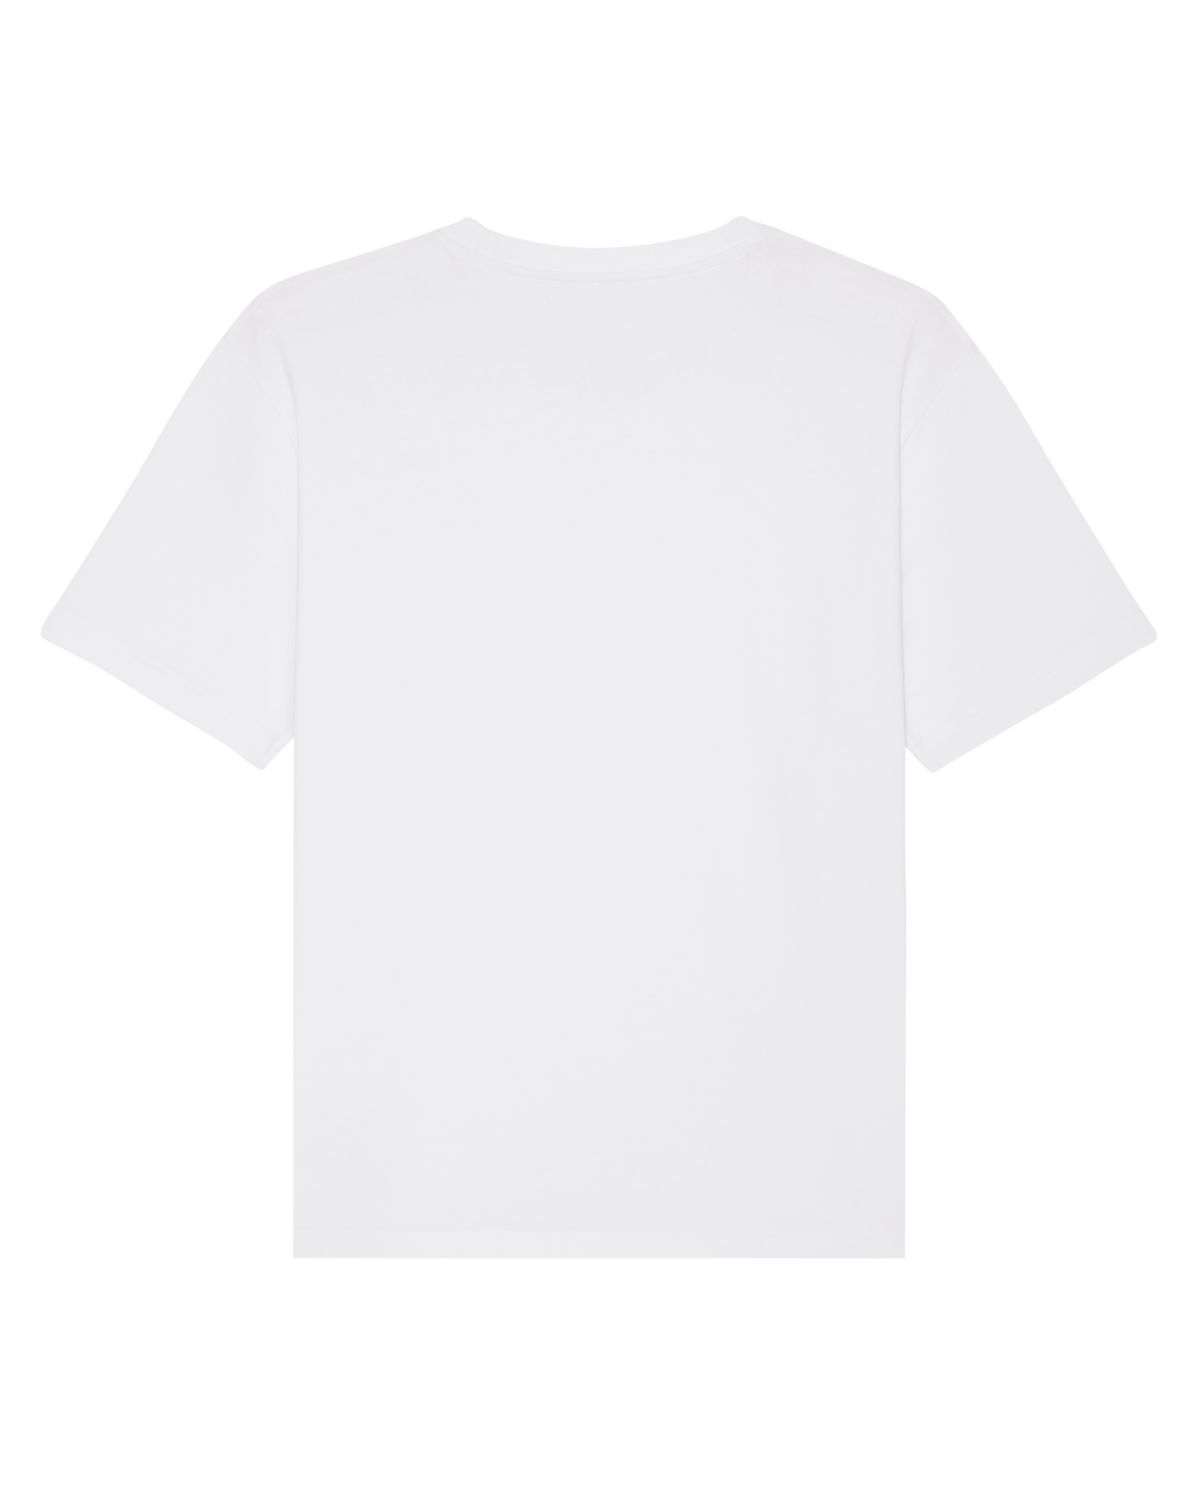 SV Basic T-Shirt - White